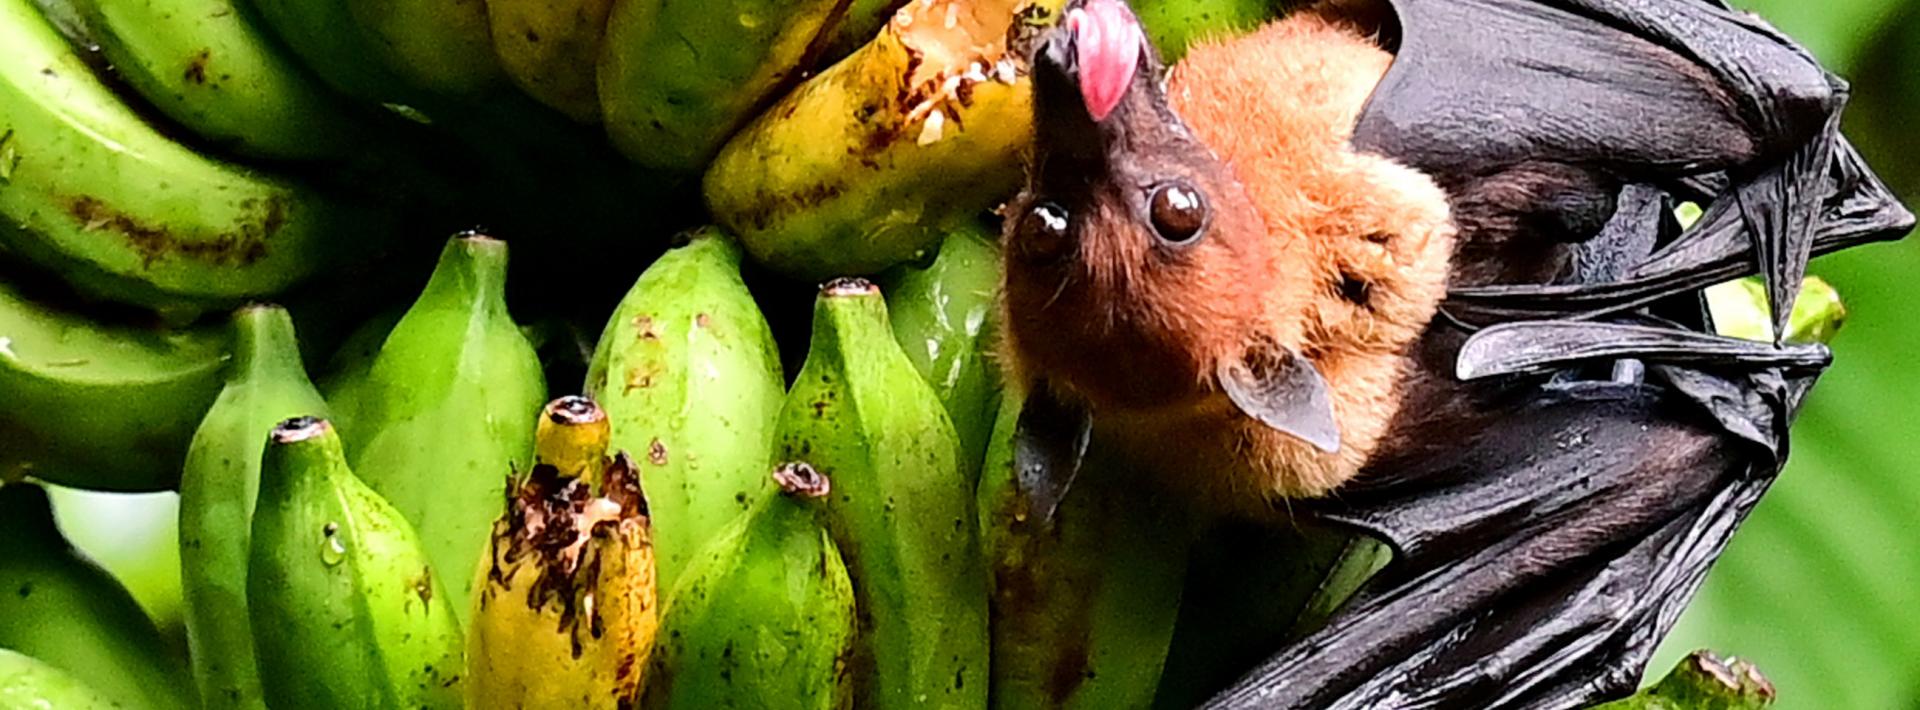 fruit bat hanging off leaf